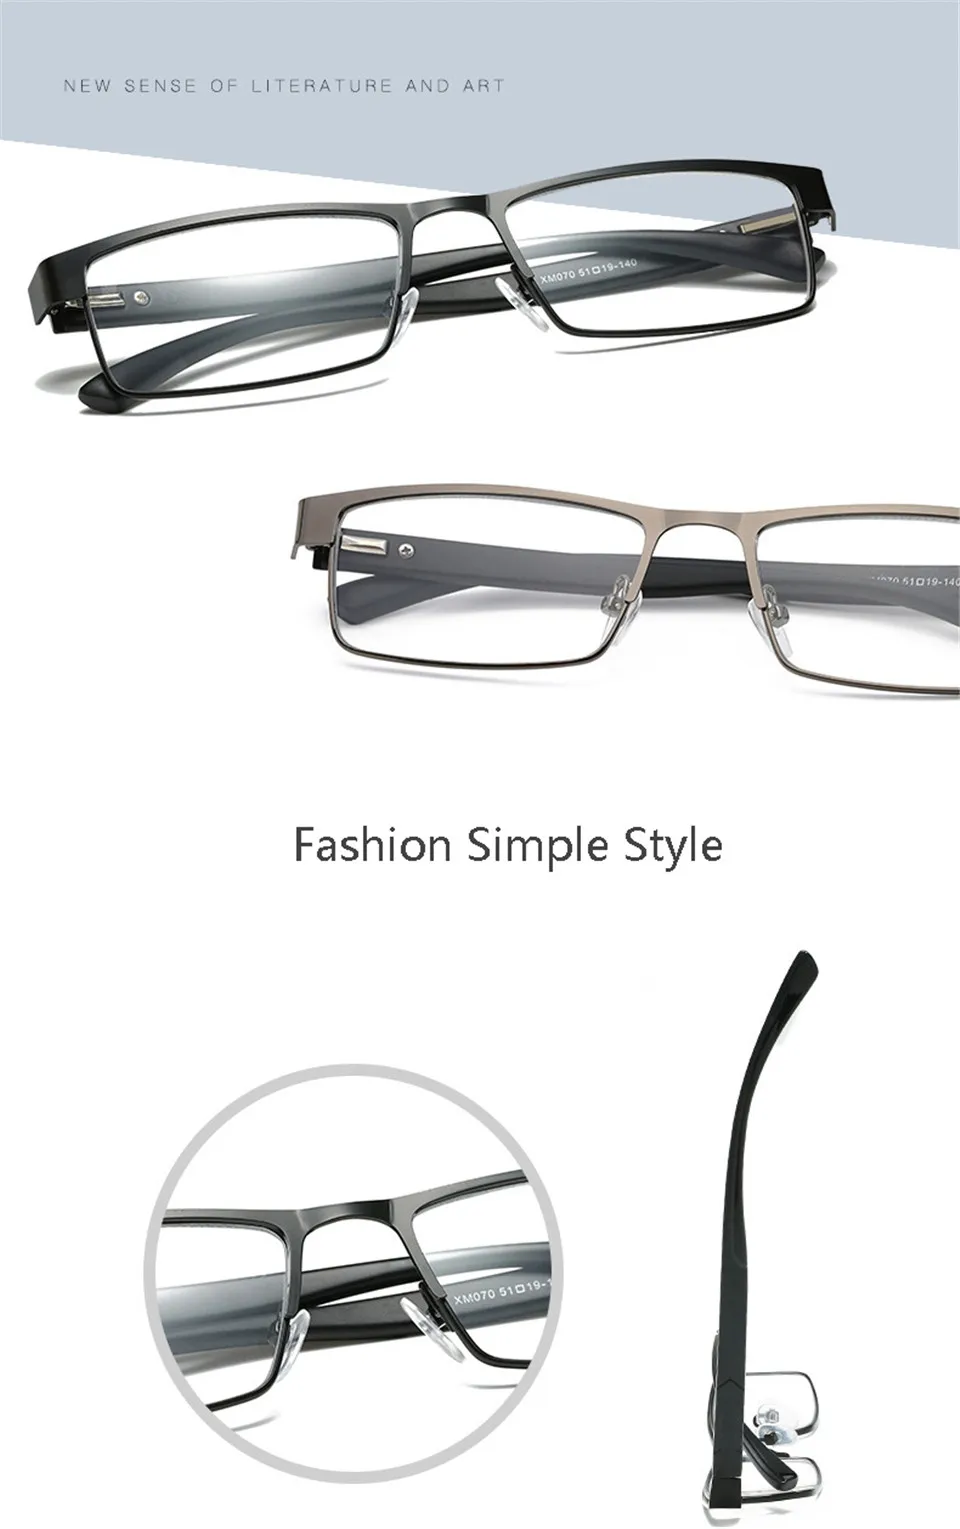 Iboode, мужские очки для чтения, титановый сплав, дальнозоркость, очки по рецепту, ретро, бизнес, антиусталость, очки для чтения, для женщин и мужчин